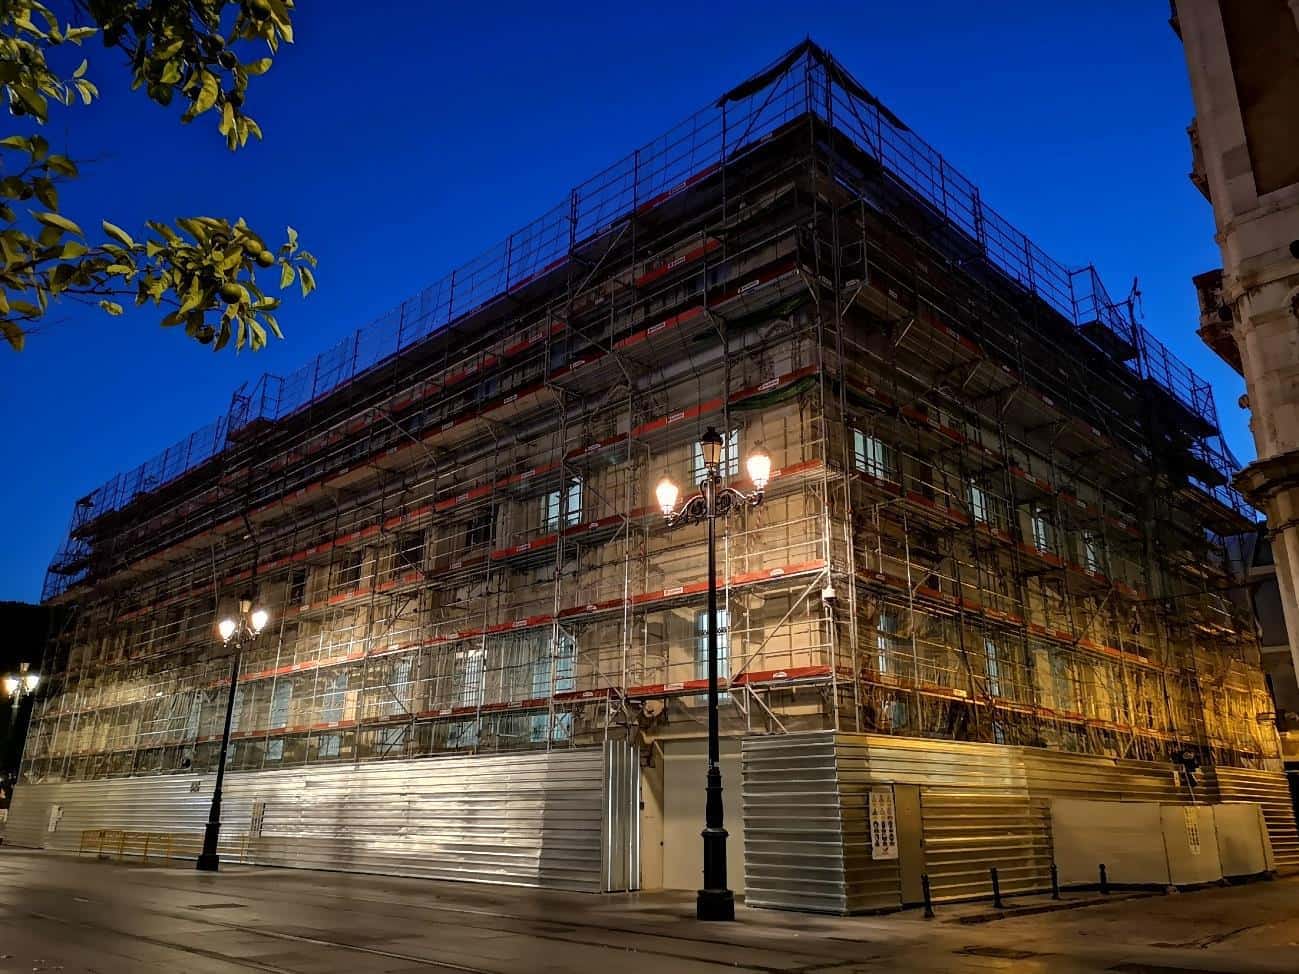 Restauración de las fachadas del edificio del Banco de España en Sevilla - Alquiansa